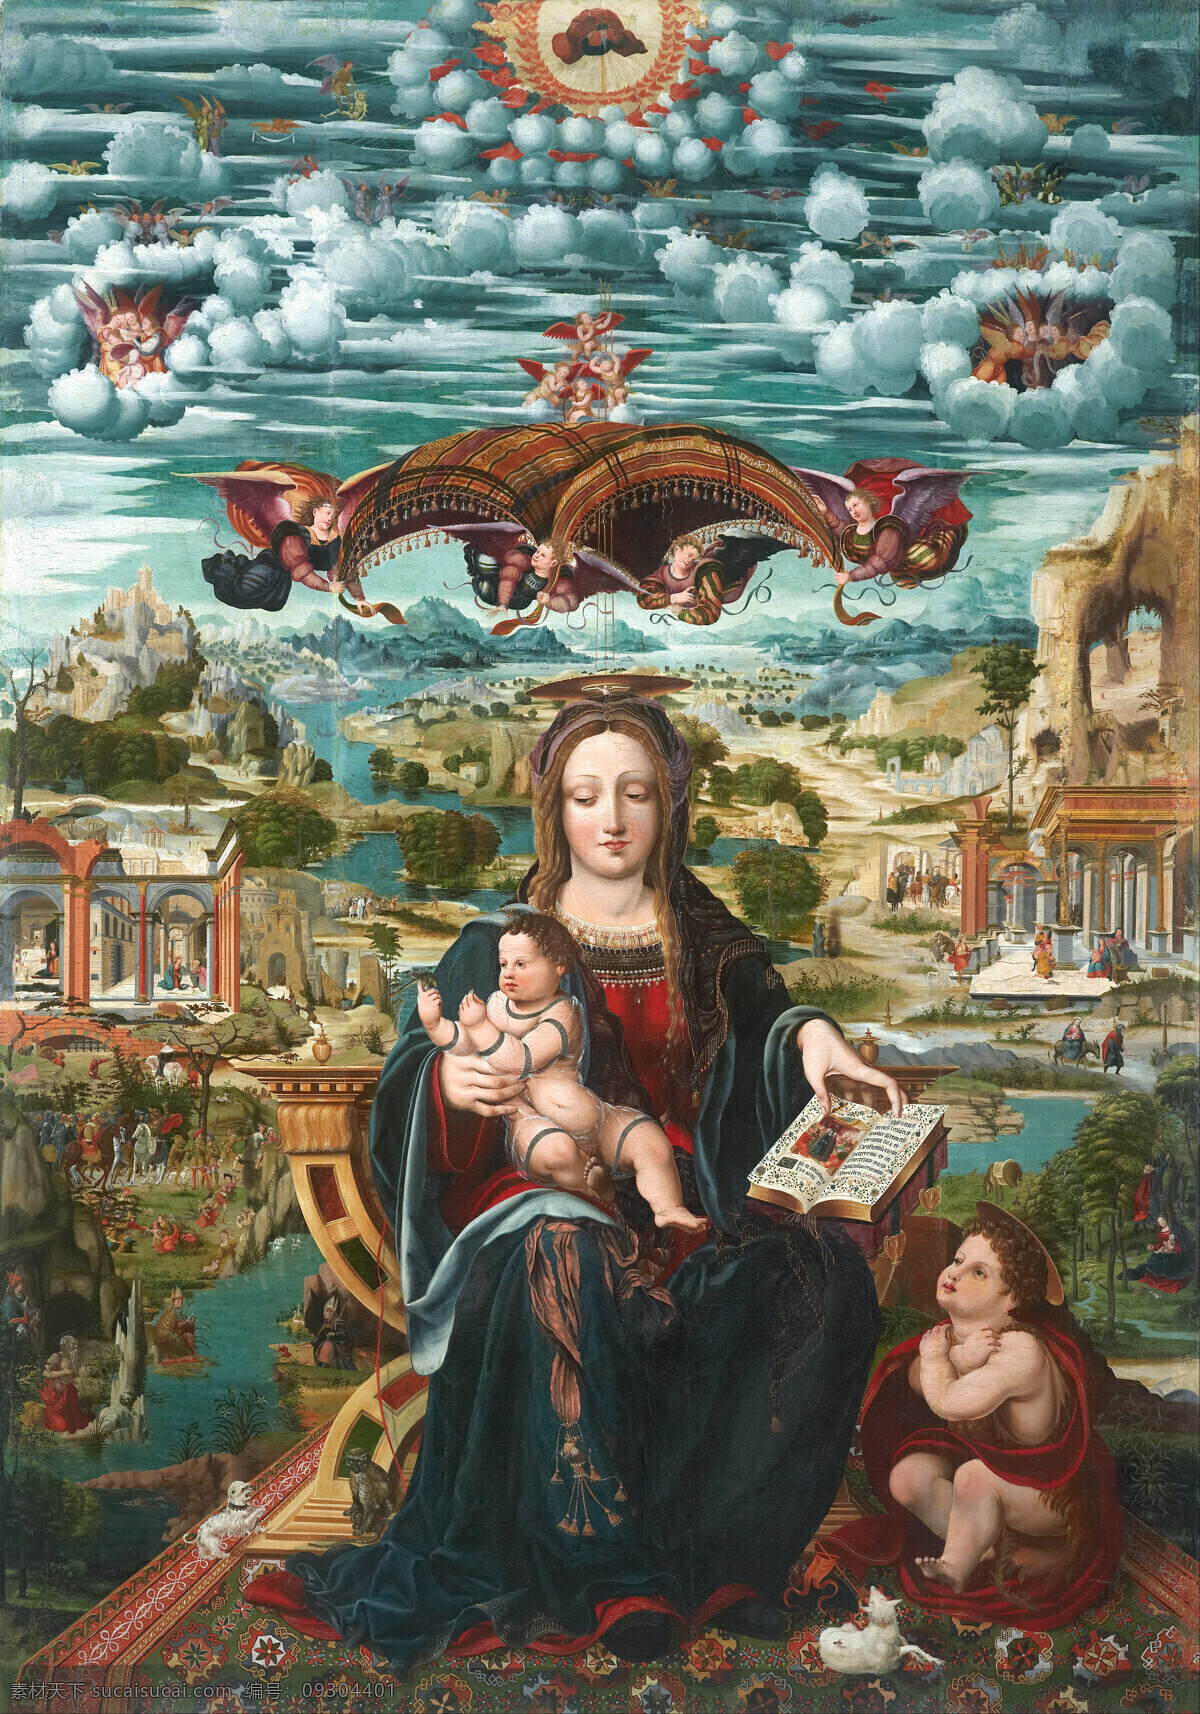 圣母与圣婴 圣母玛丽娅 圣婴耶酥 手持圣书 天使们 圣徙 天堂世界 宗教油画 油画 绘画书法 文化艺术